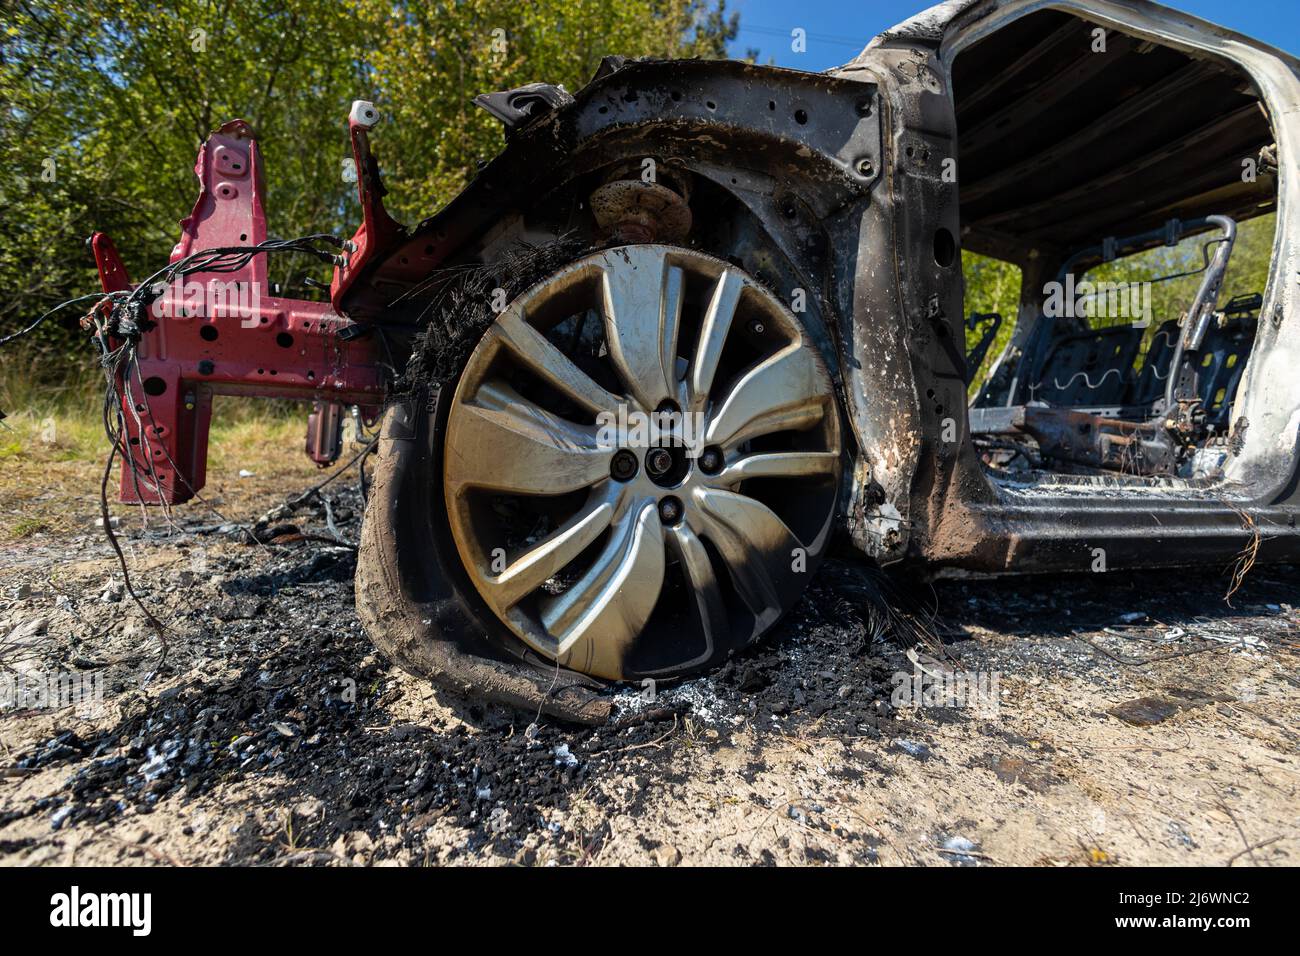 Newburn Reino Unido: 29th de abril de 2022: Un coche robado que ha sido quemado y vertido en un campo. Peugeot de coche pequeño con forma de 208, sin logotipo Foto de stock